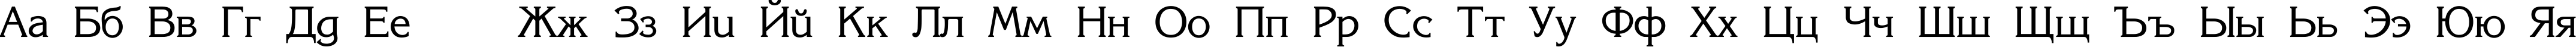 Пример написания русского алфавита шрифтом Korinna_SU